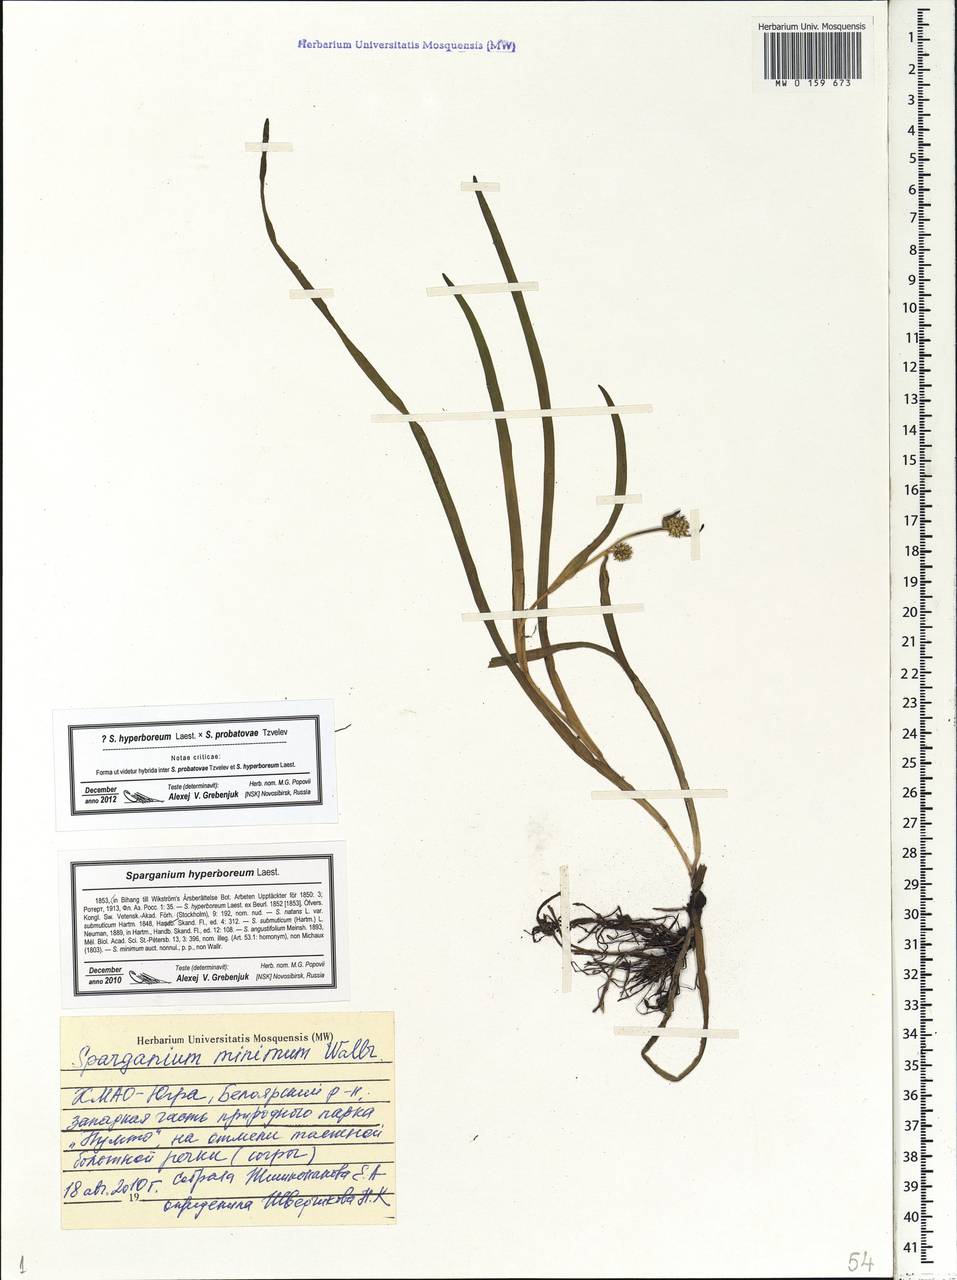 Sparganium hyperboreum × probatovae, Siberia, Western Siberia (S1) (Russia)